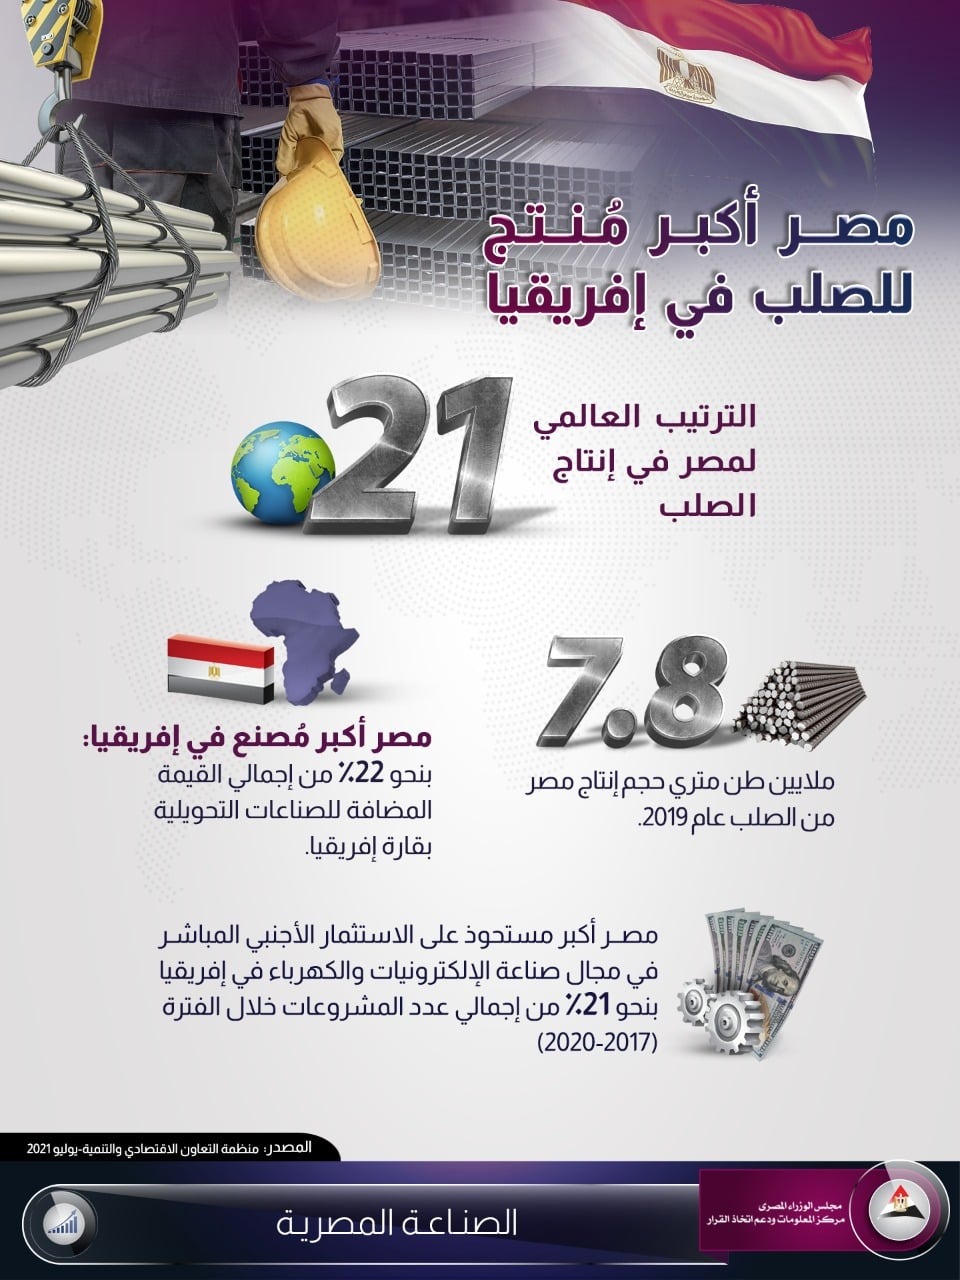  مصر الأولى في إنتاج الحديد والصلب بإفريقيًا والـ 21 على مستوى العالم   إنفوجراف